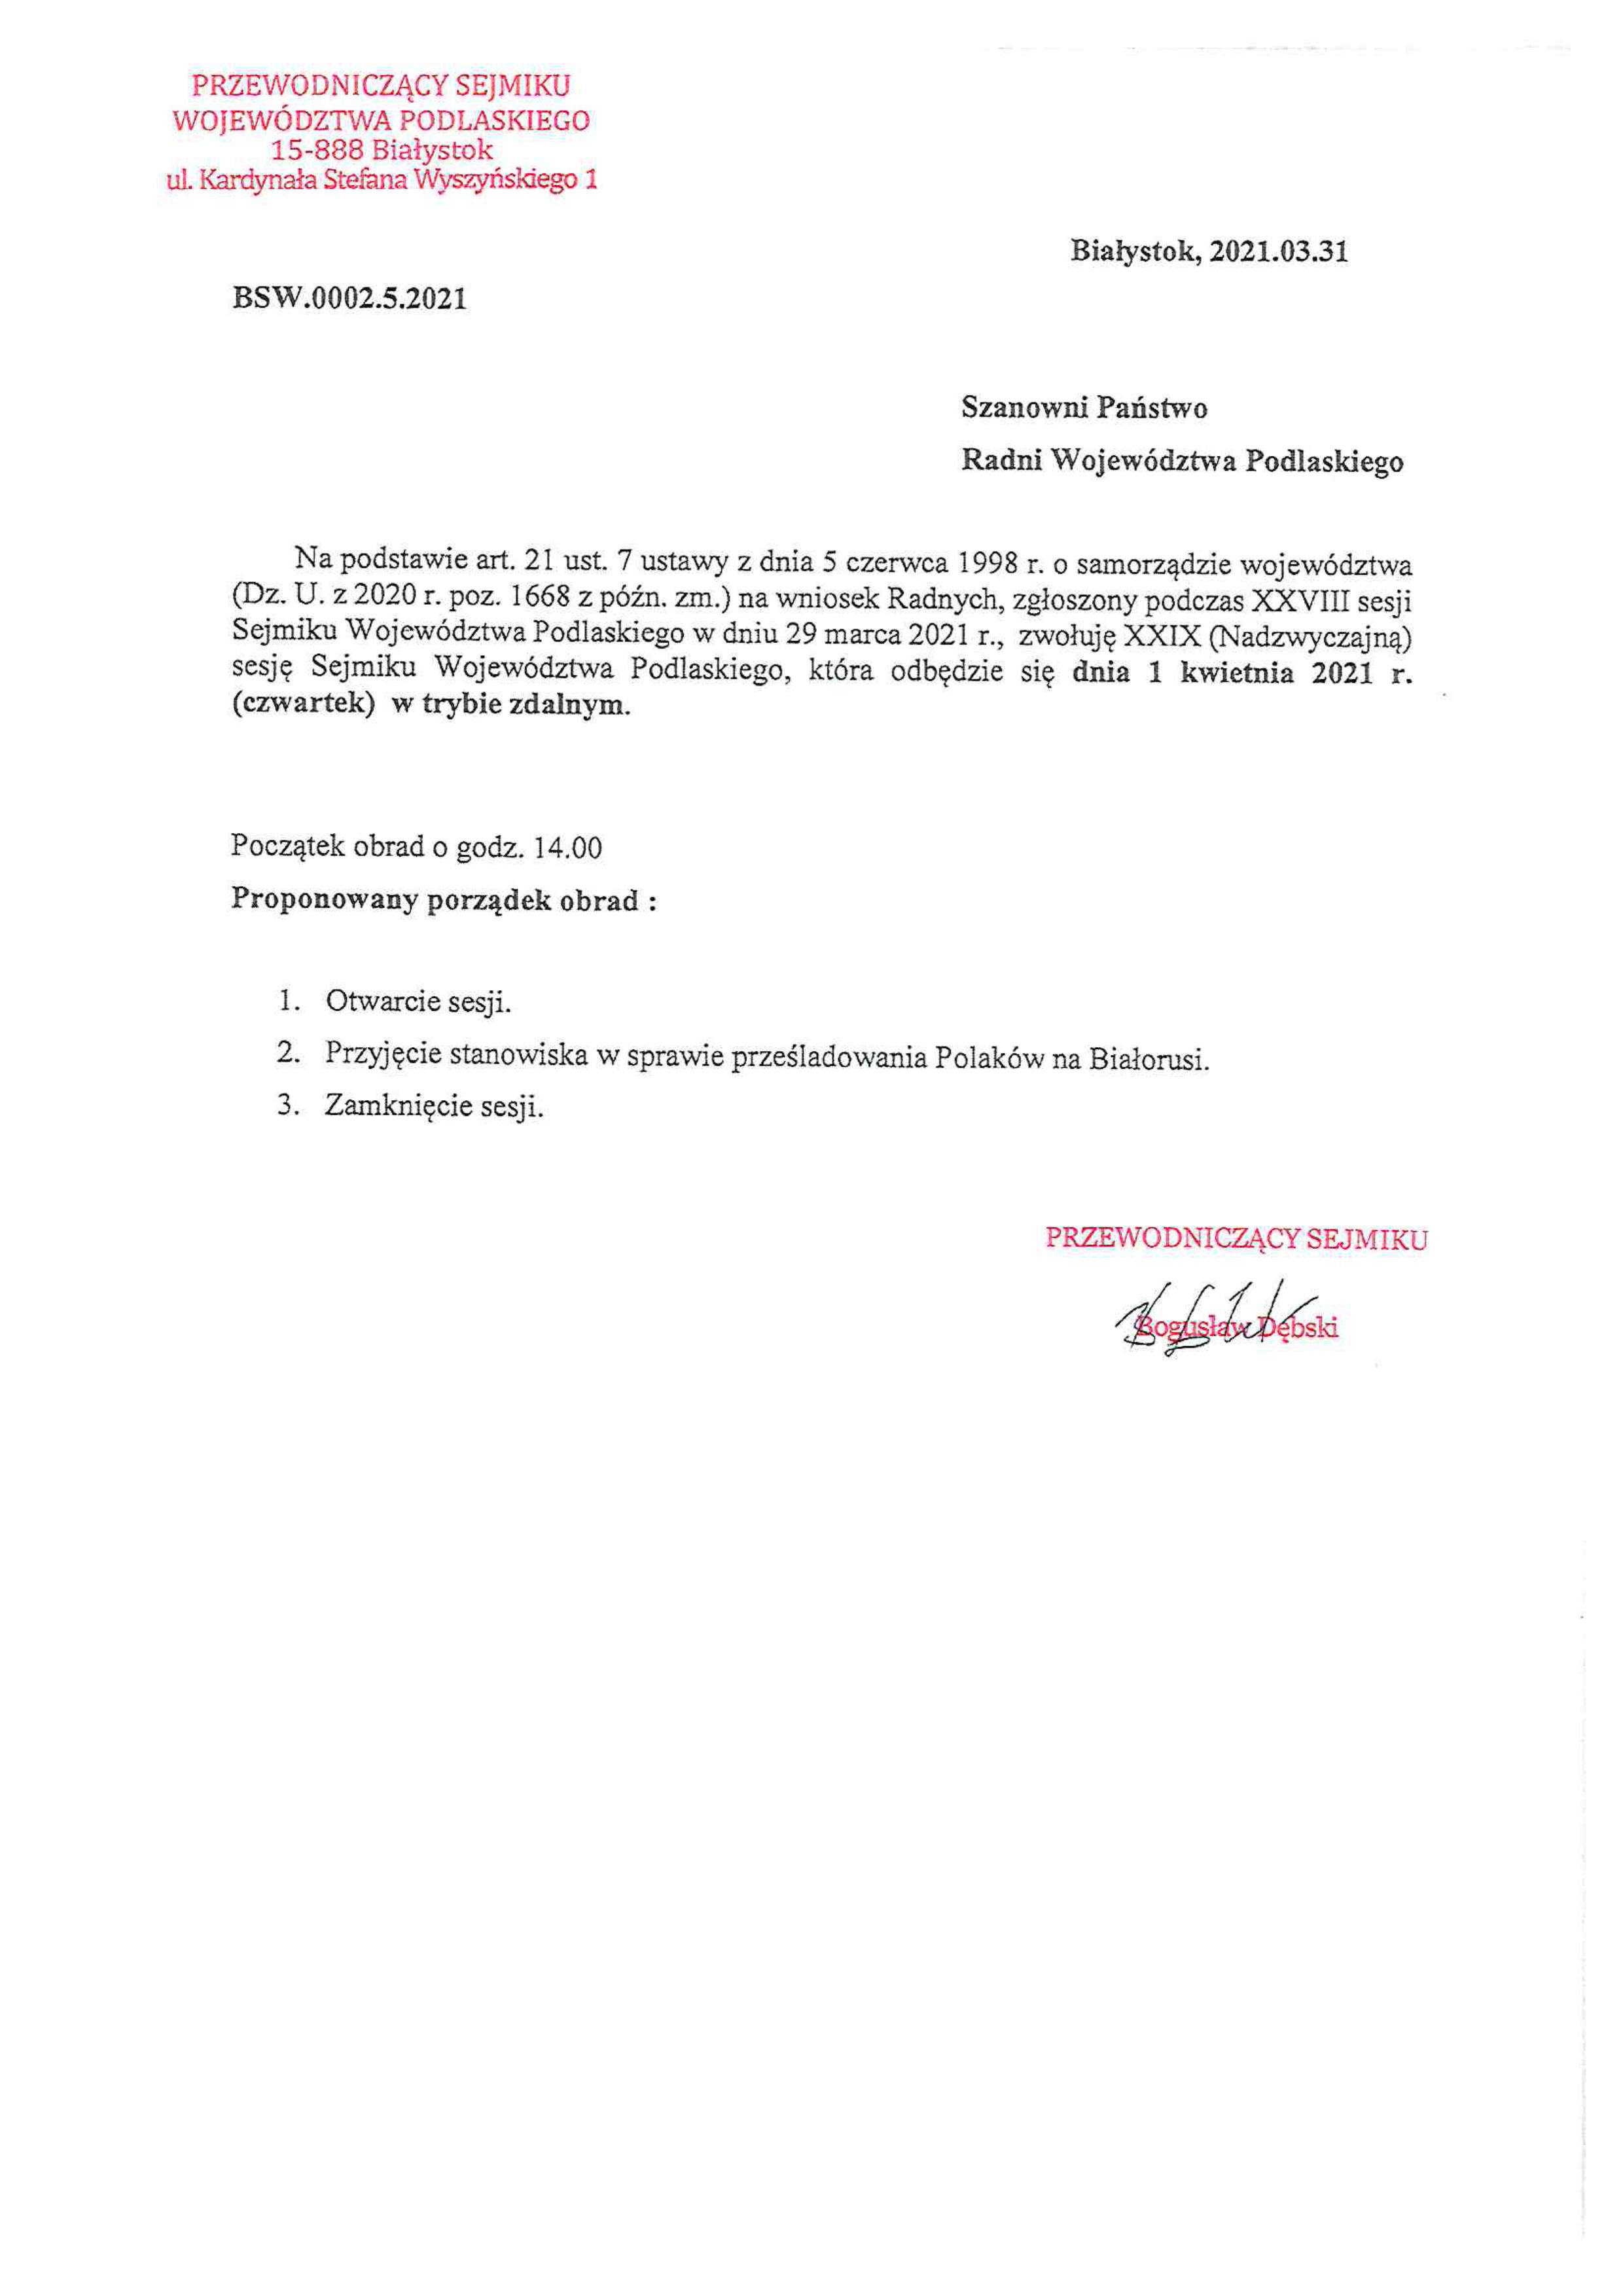 Zdjęcie dokumentu zawierającego porządek obrad sesji Sejmiku Województwa Podlaskiego. Jego treść umieszczona jest powyżej